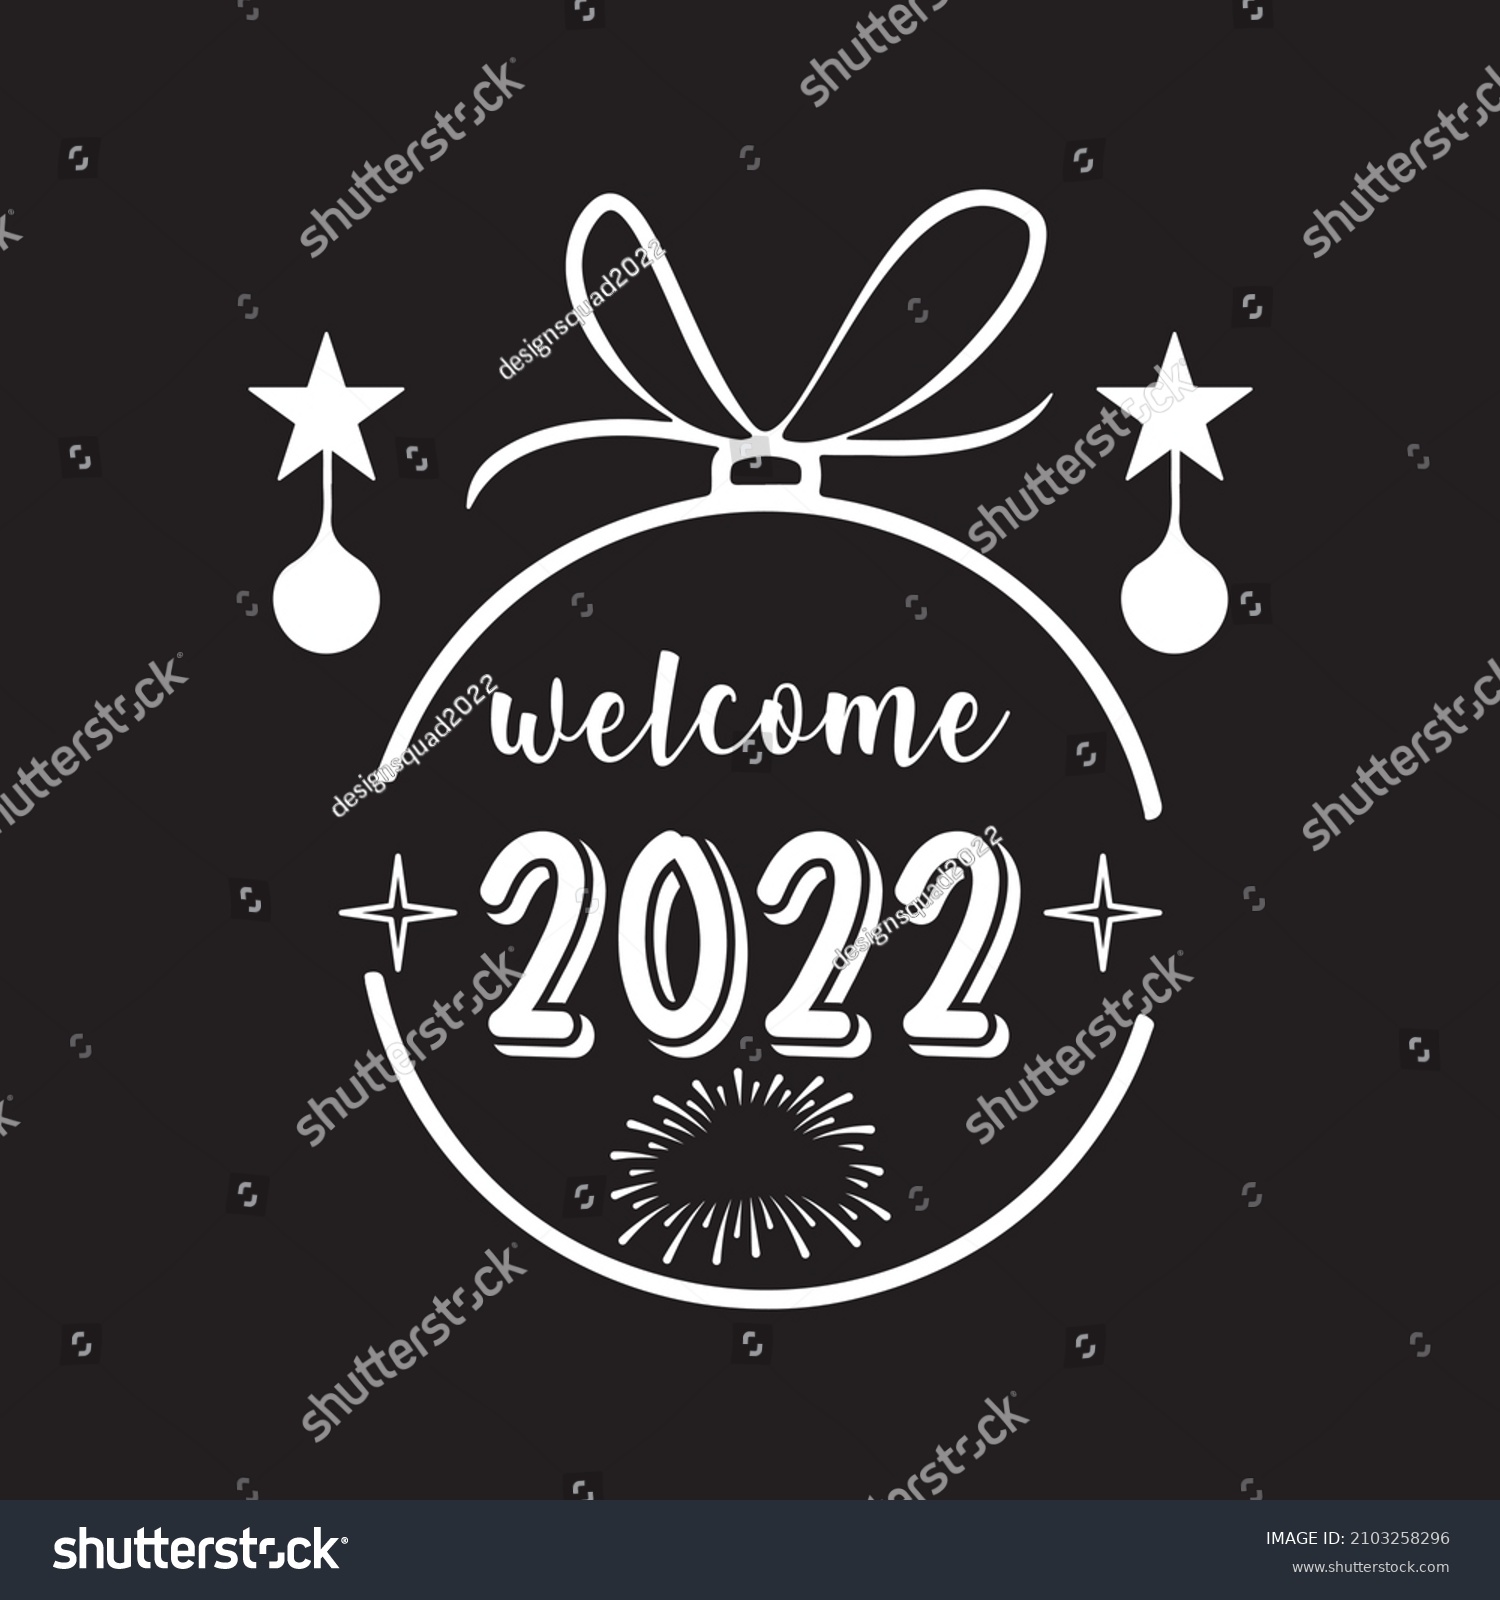 SVG of welcome 2022 svg desig vector file svg